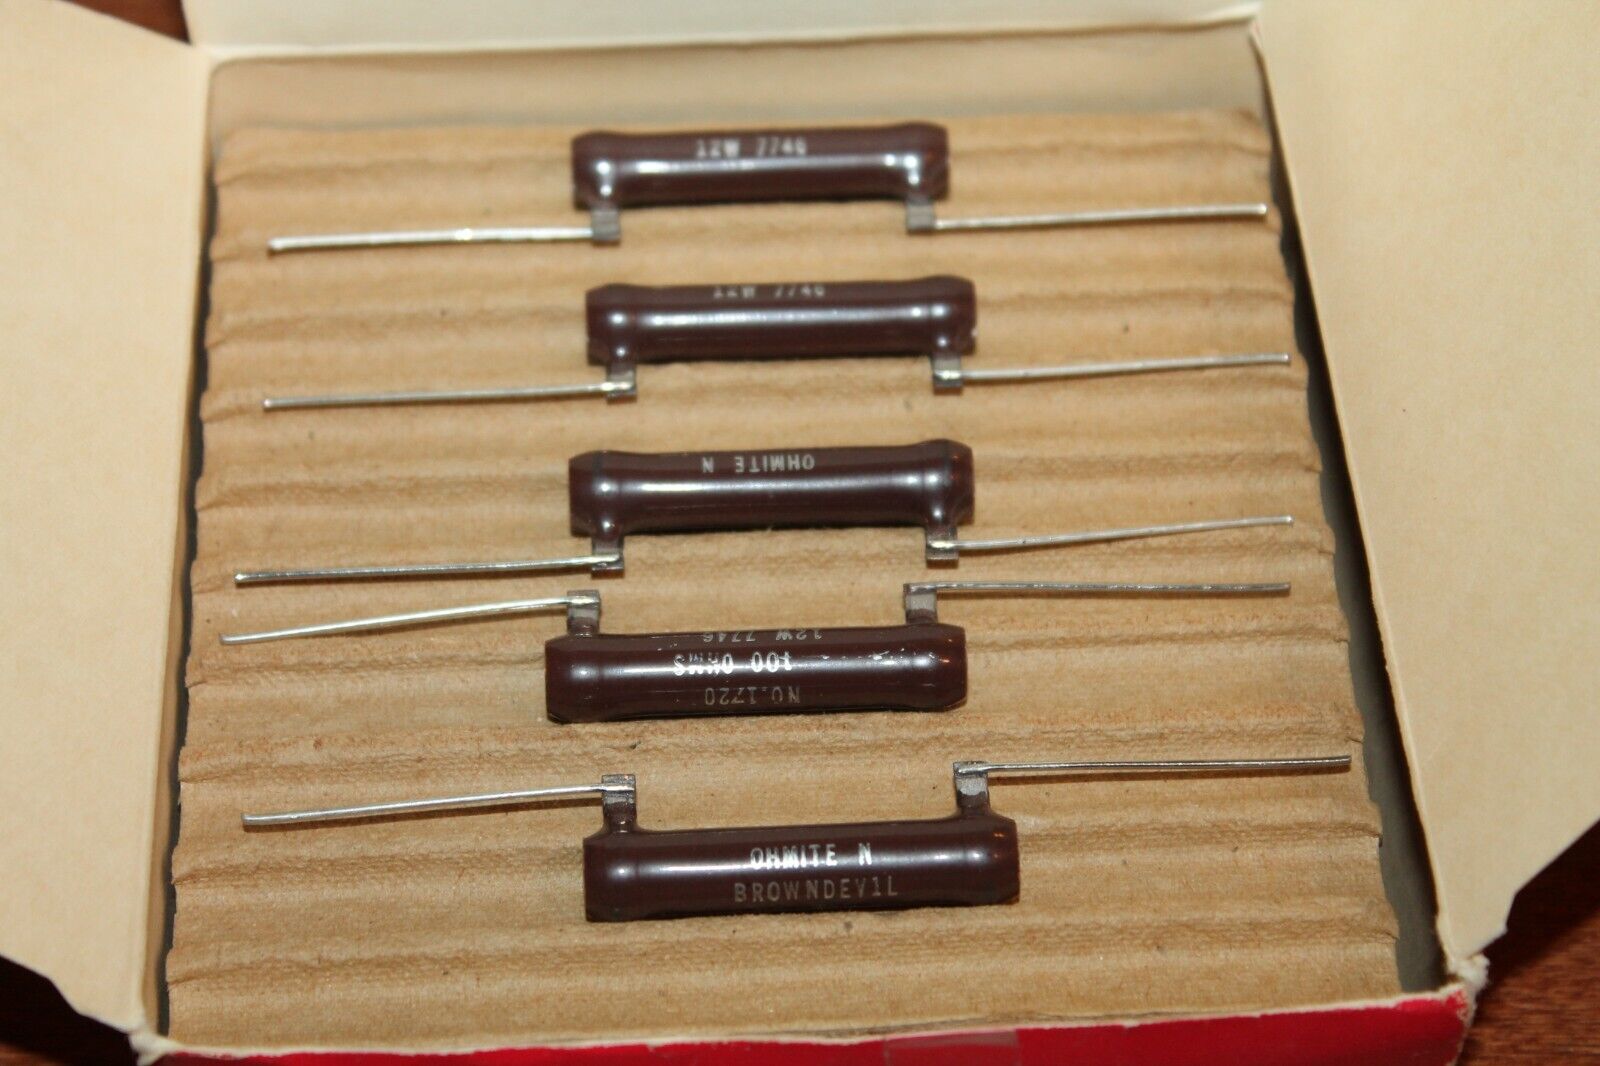 Ohmite Brown Devil No 1720 Resistors 100 Ohm 12W (Box of 25) Piper 484-420